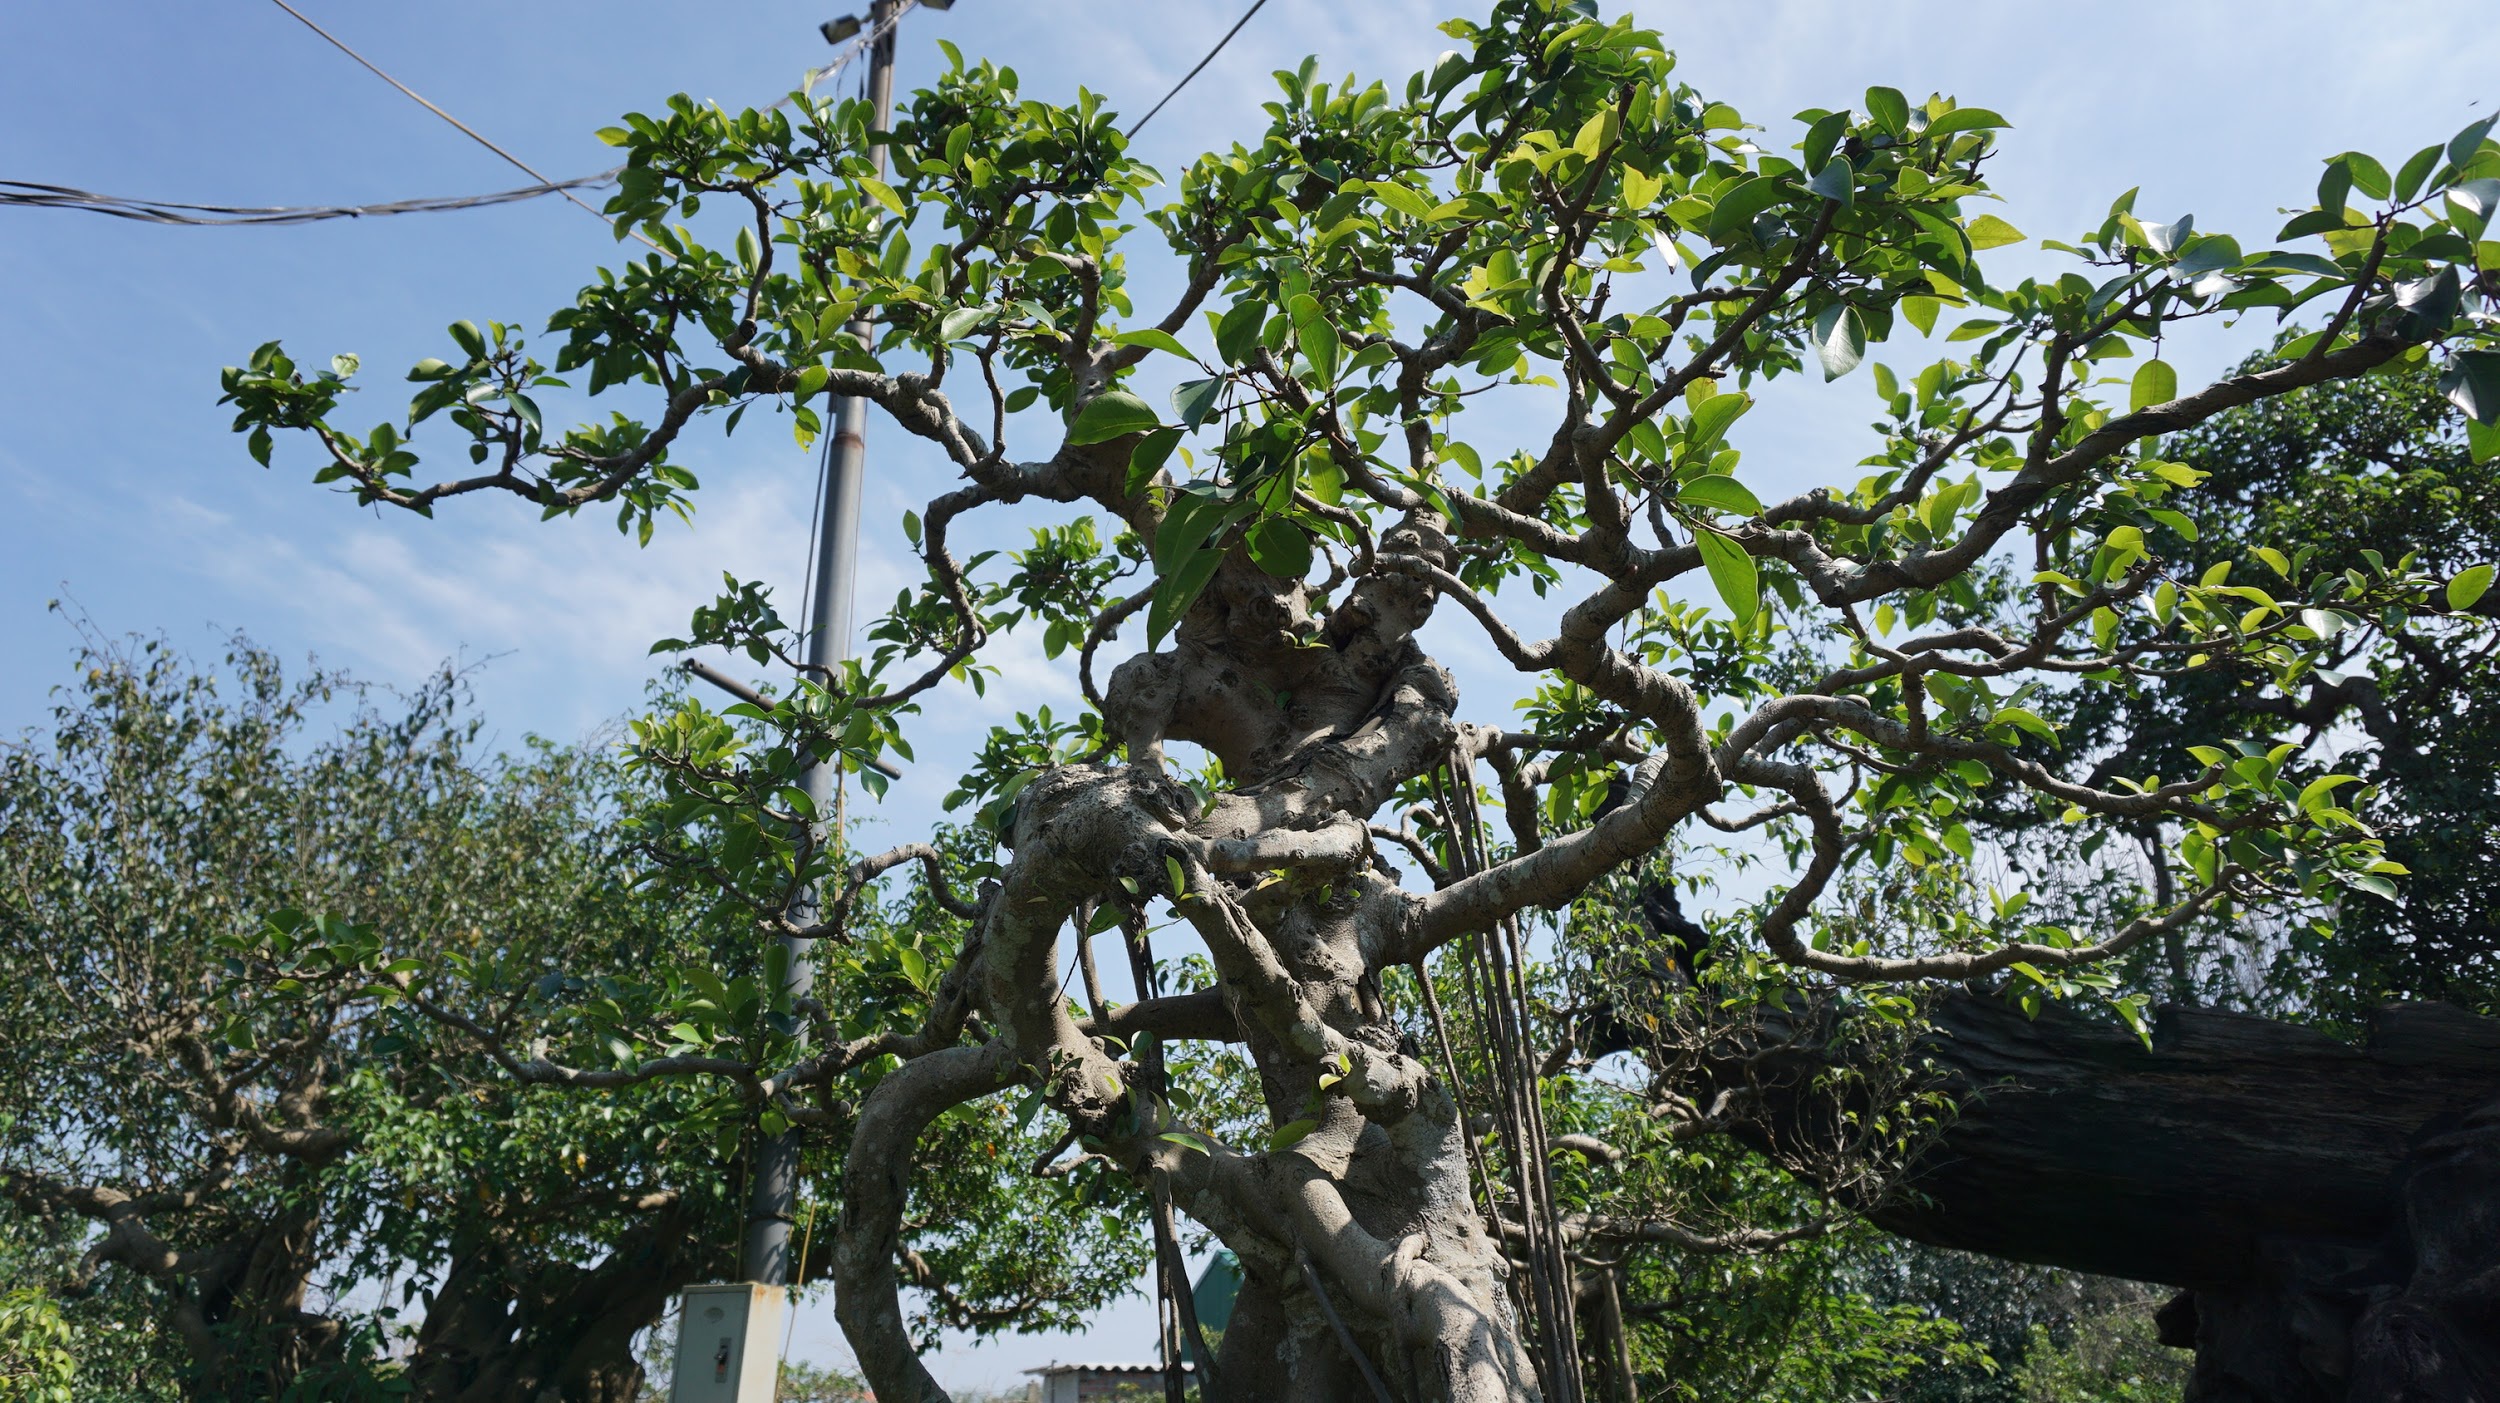 Khu vườn bỏ hoang toàn 'siêu cây' bạc tỷ của đại gia nức tiếng một thời Hang-chuc-goc-co-thu-dang-than-dang-phat-gia-tram-ty-bo-hoang-o-ha-noidocx-1588065446989